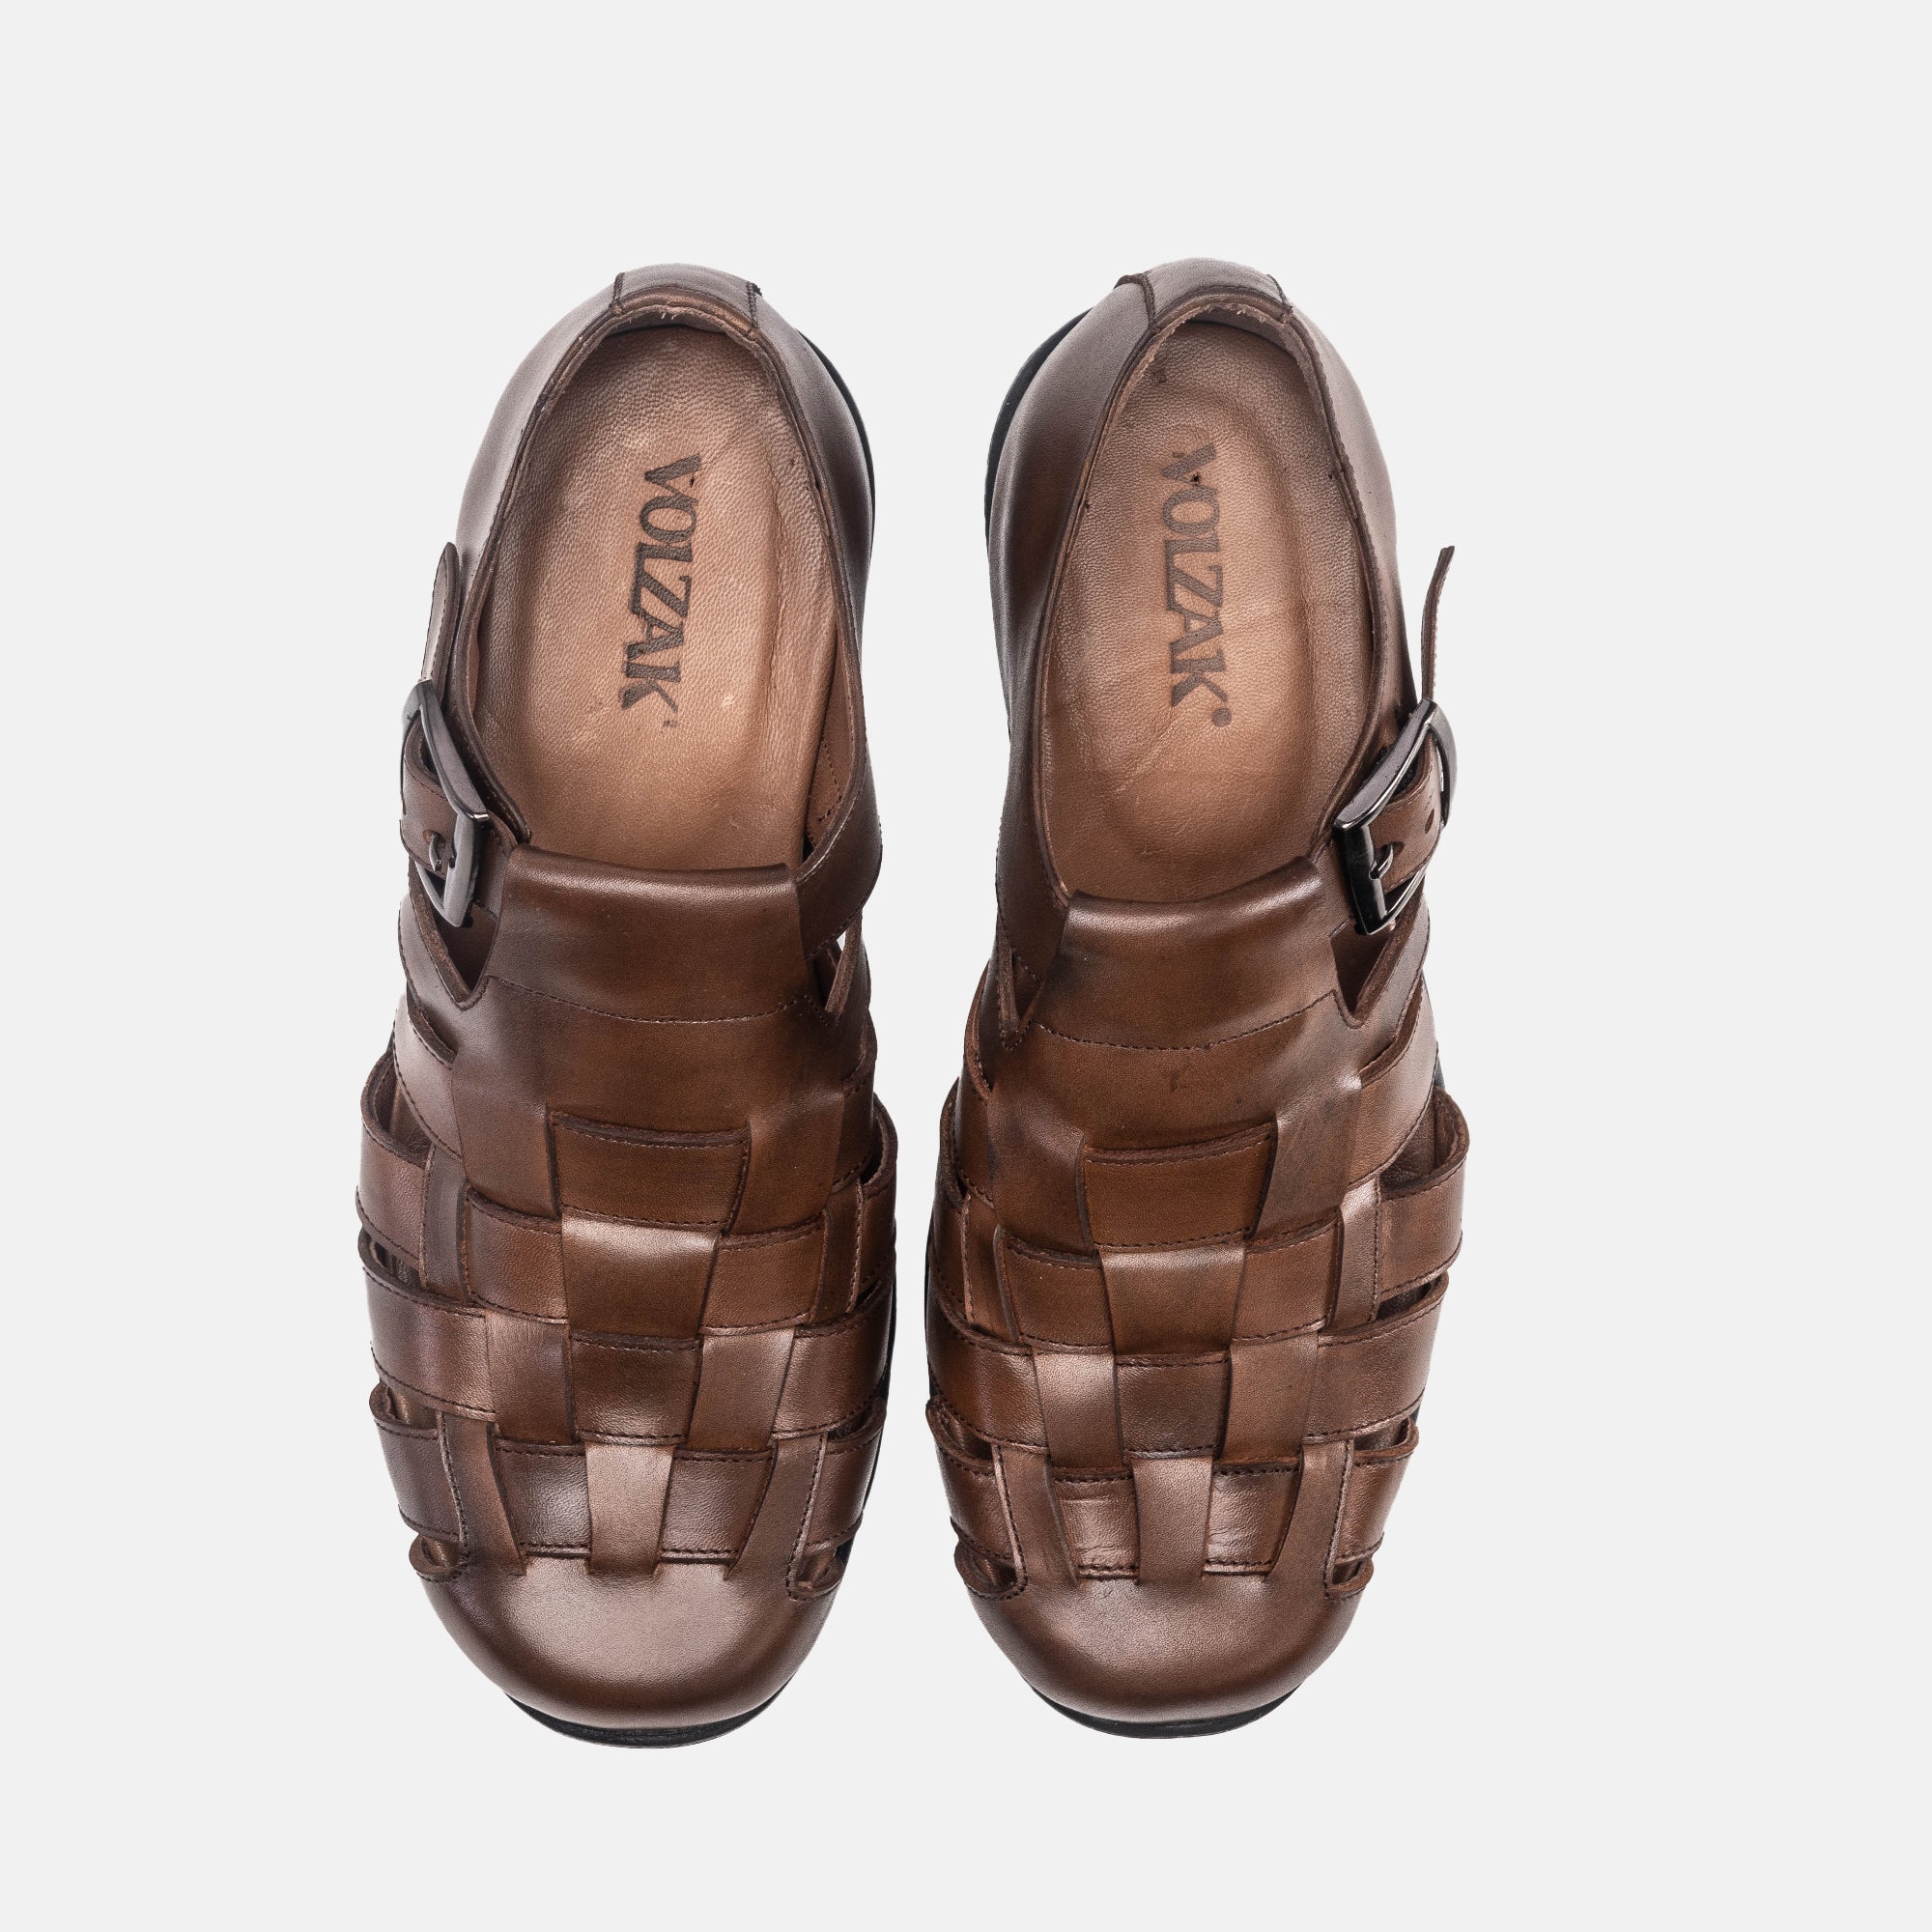 '''5210 Sandale en cuir Marron vintage